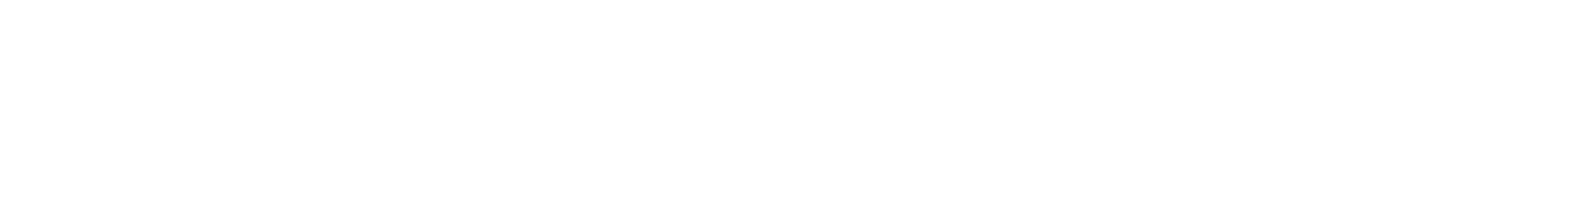 Washington Trust Bancorp Logo groß für dunkle Hintergründe (transparentes PNG)